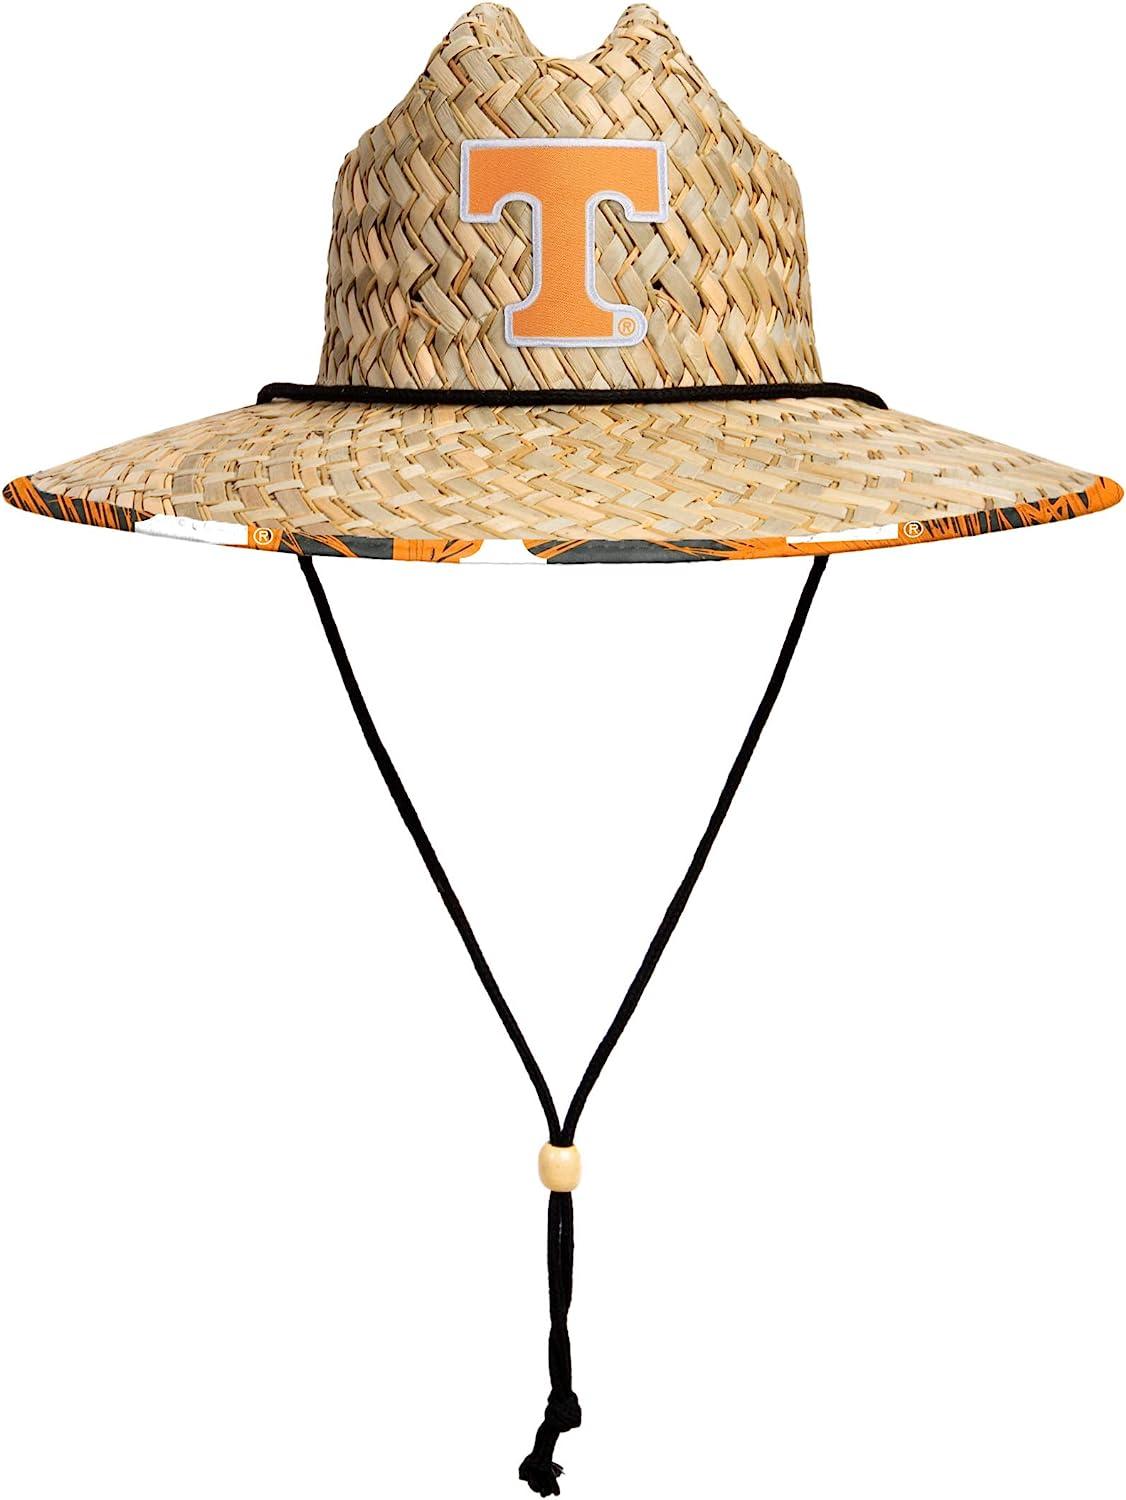 FOCO NCAA College Team Logo Sport Outdoor Sun Bucket Boonie Hat